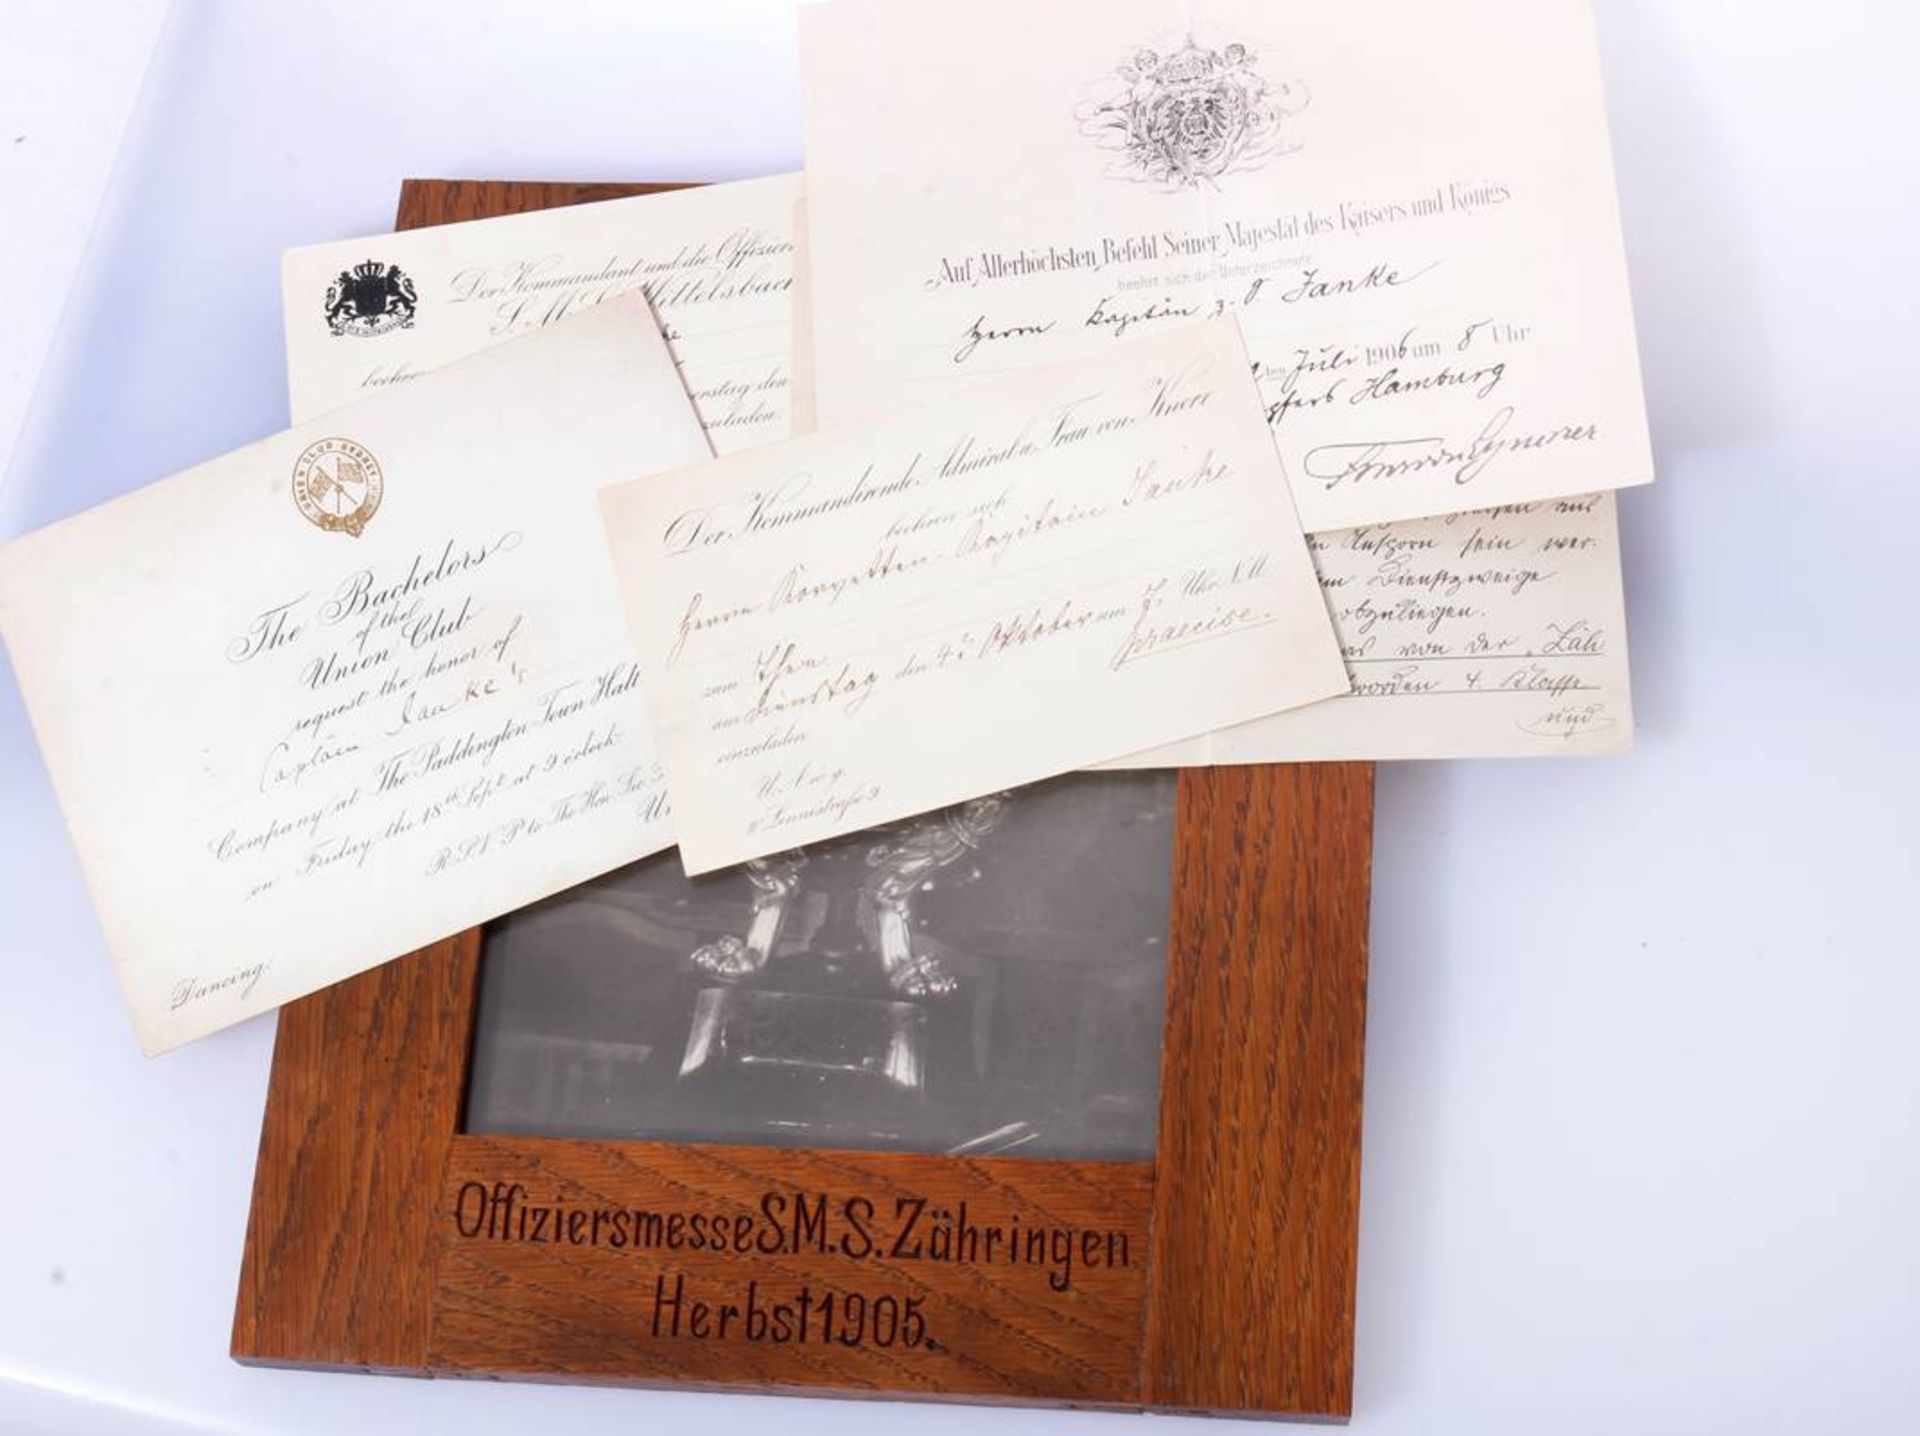 Schießpreis Zähringen MarineBilderrahmen mit dem Foto des 1905 verliehenen kaiserlichen